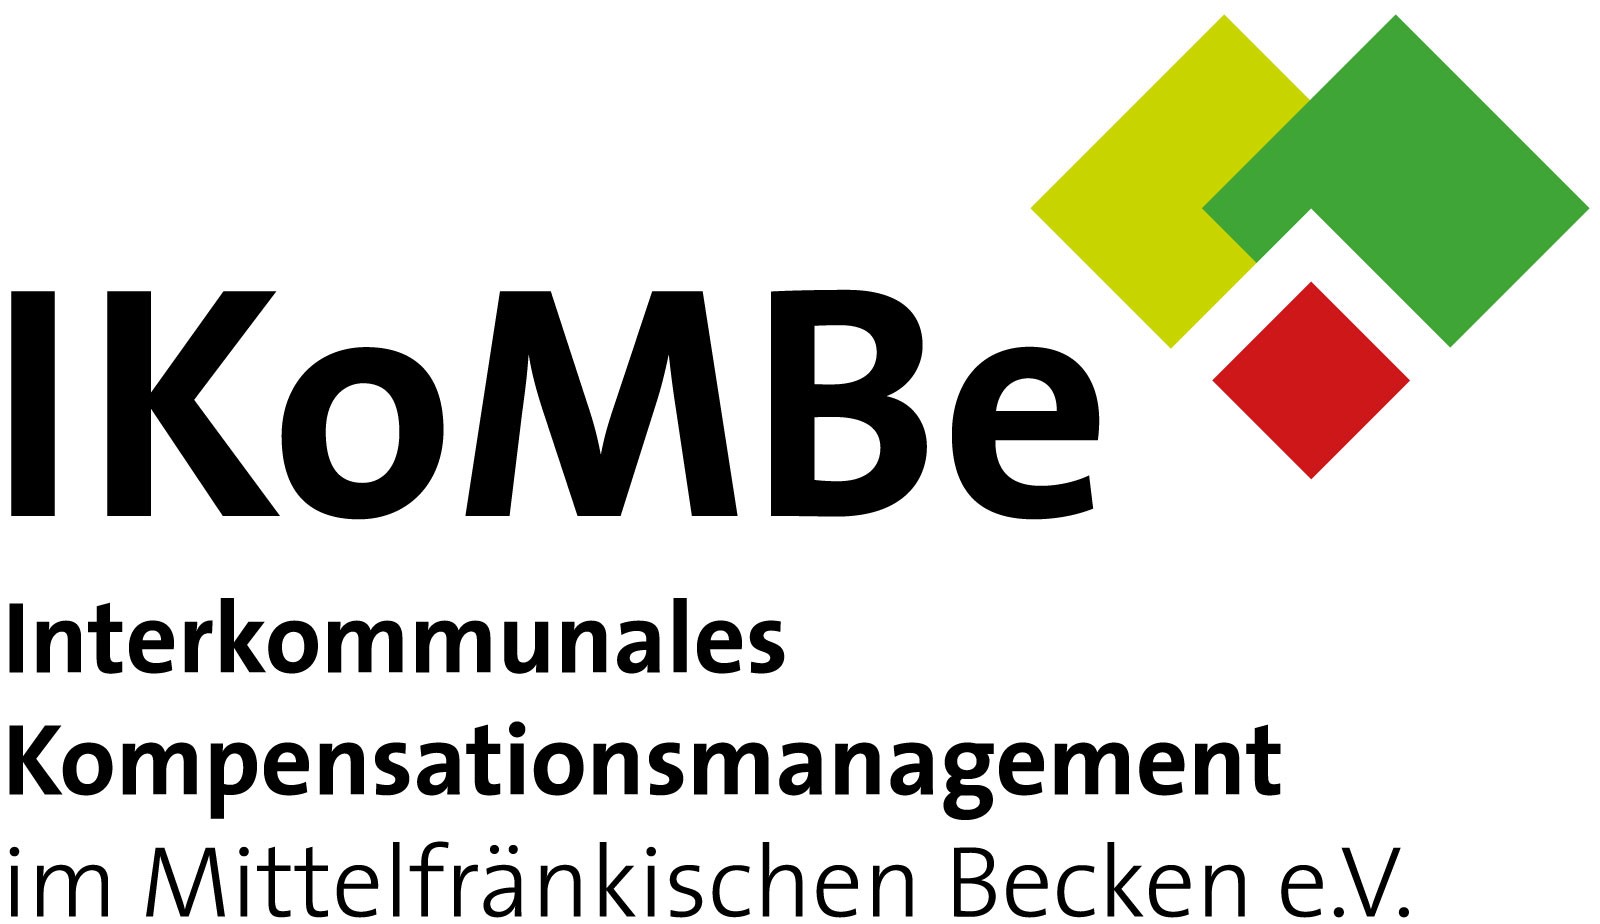  IKOMBE e. v. Logo 